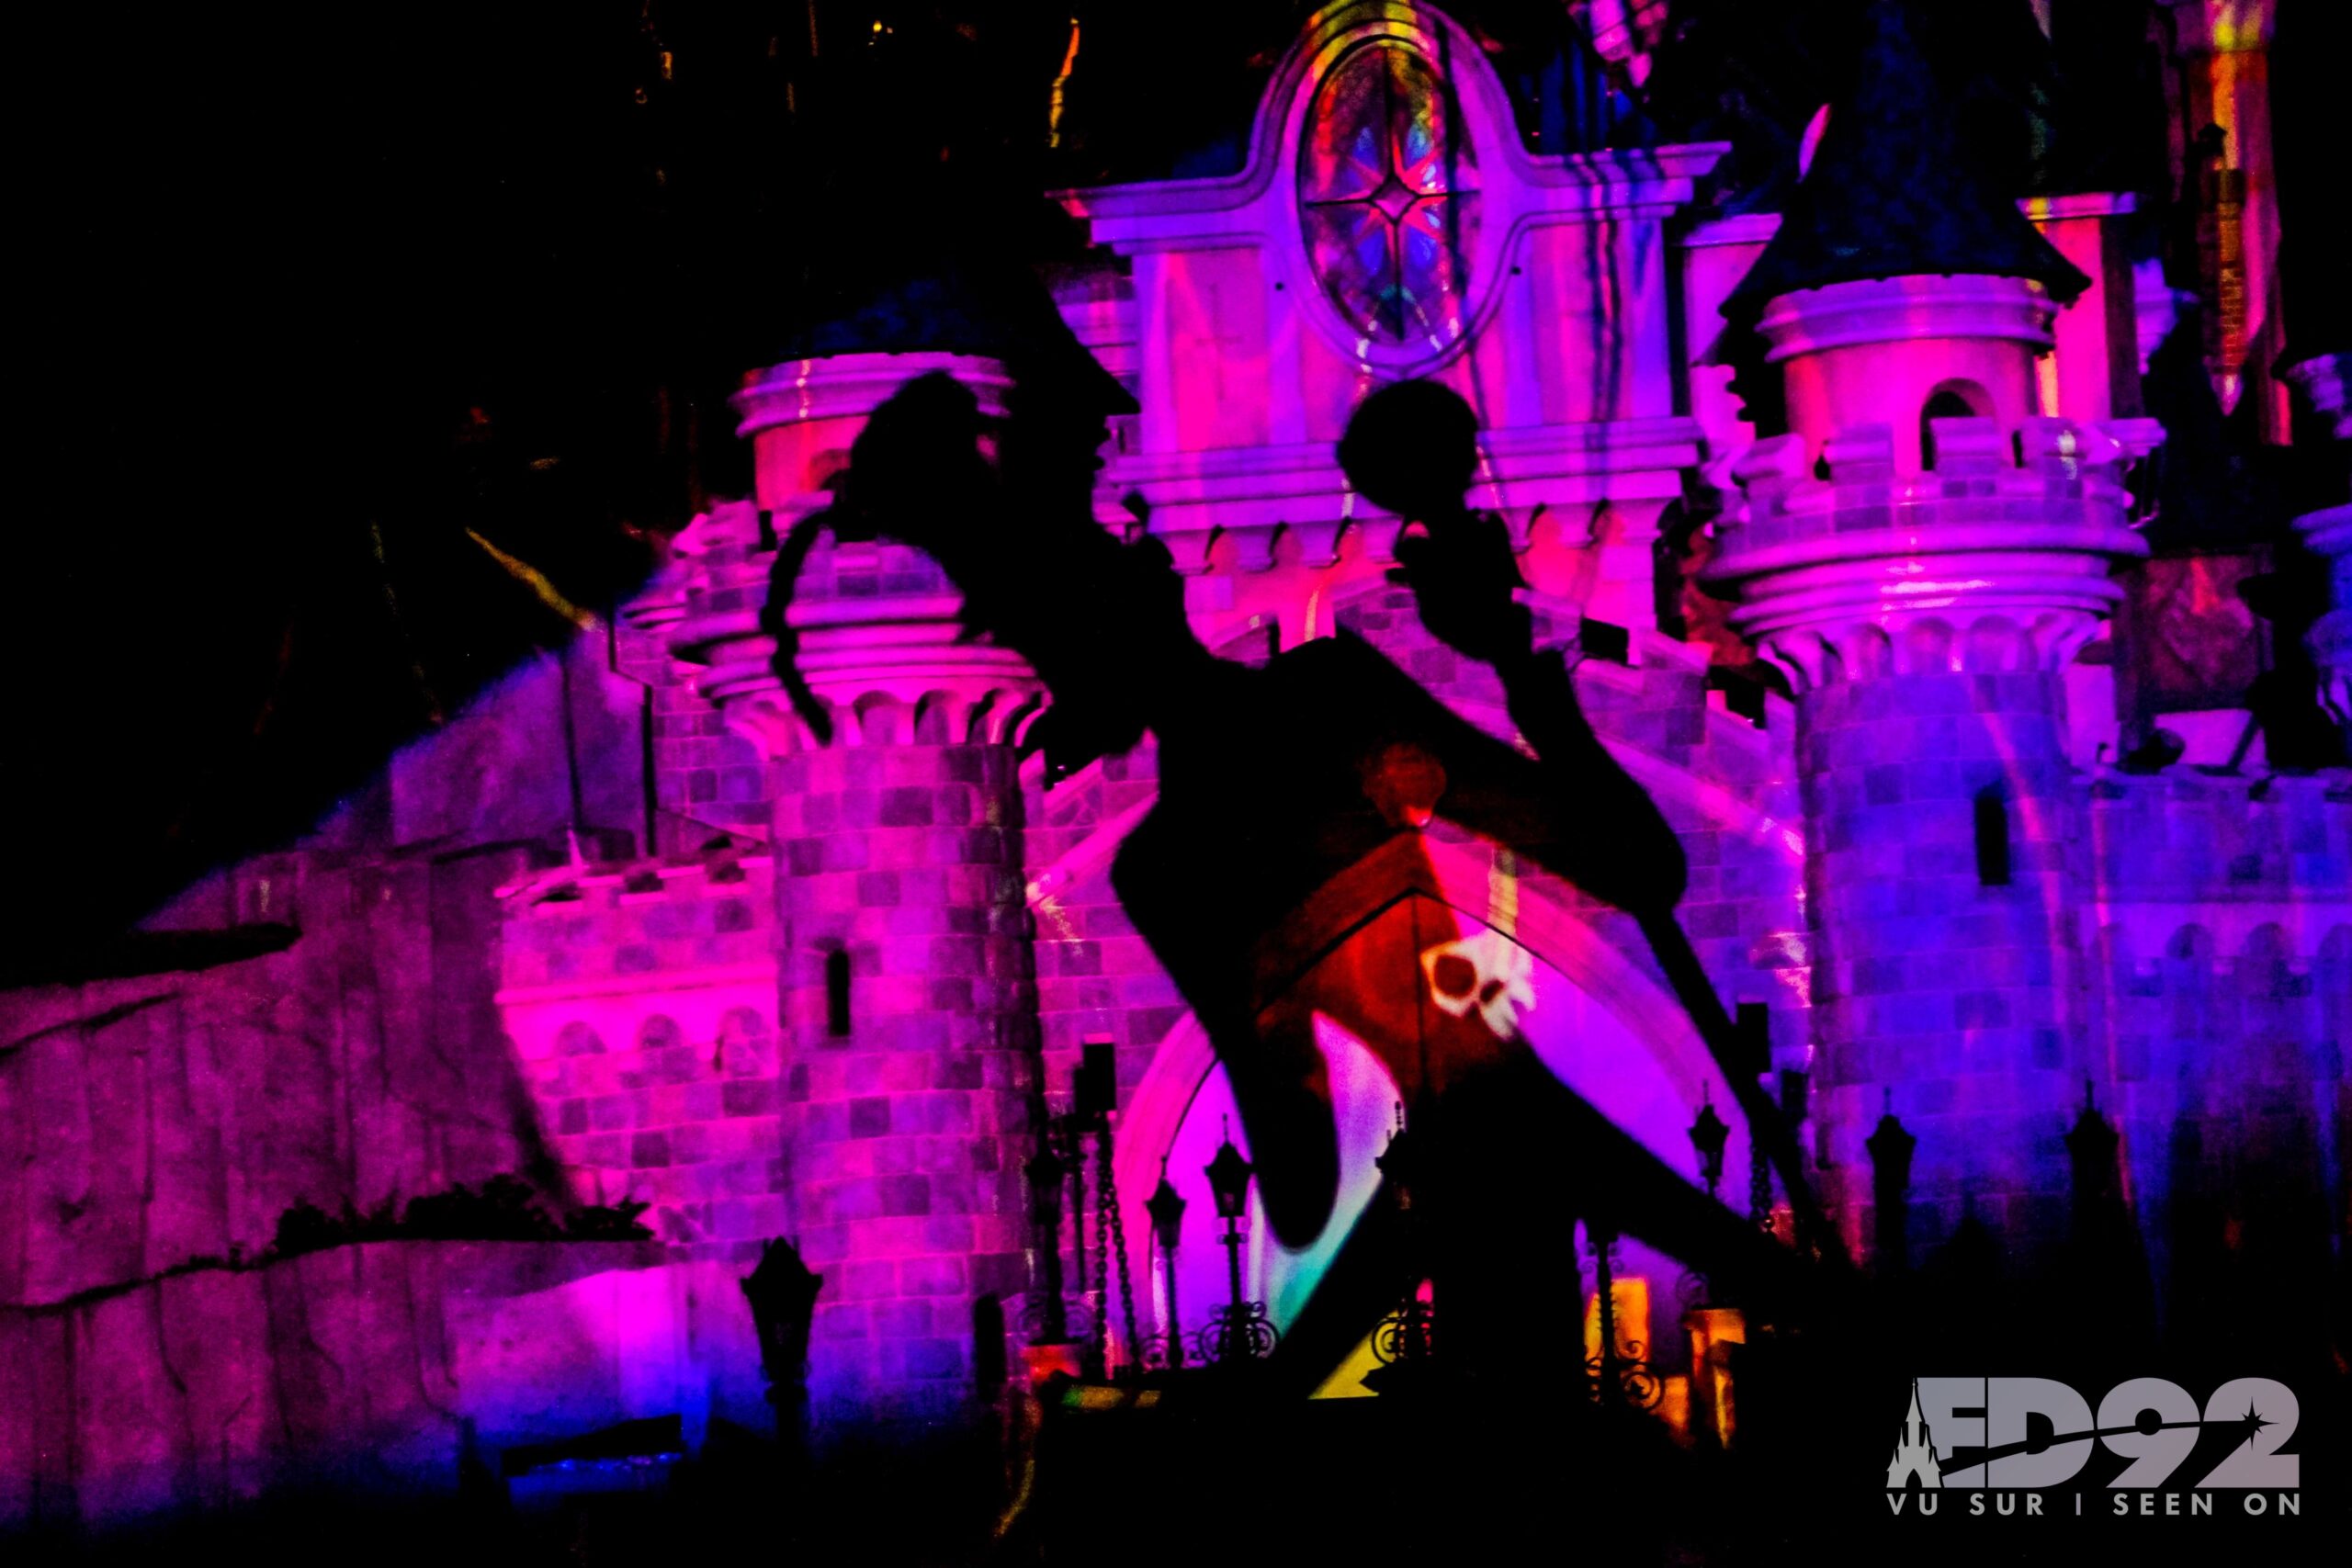 Disneyland Paris: La Symphonie des Couleurs Disney, the Park's new winter  festival 